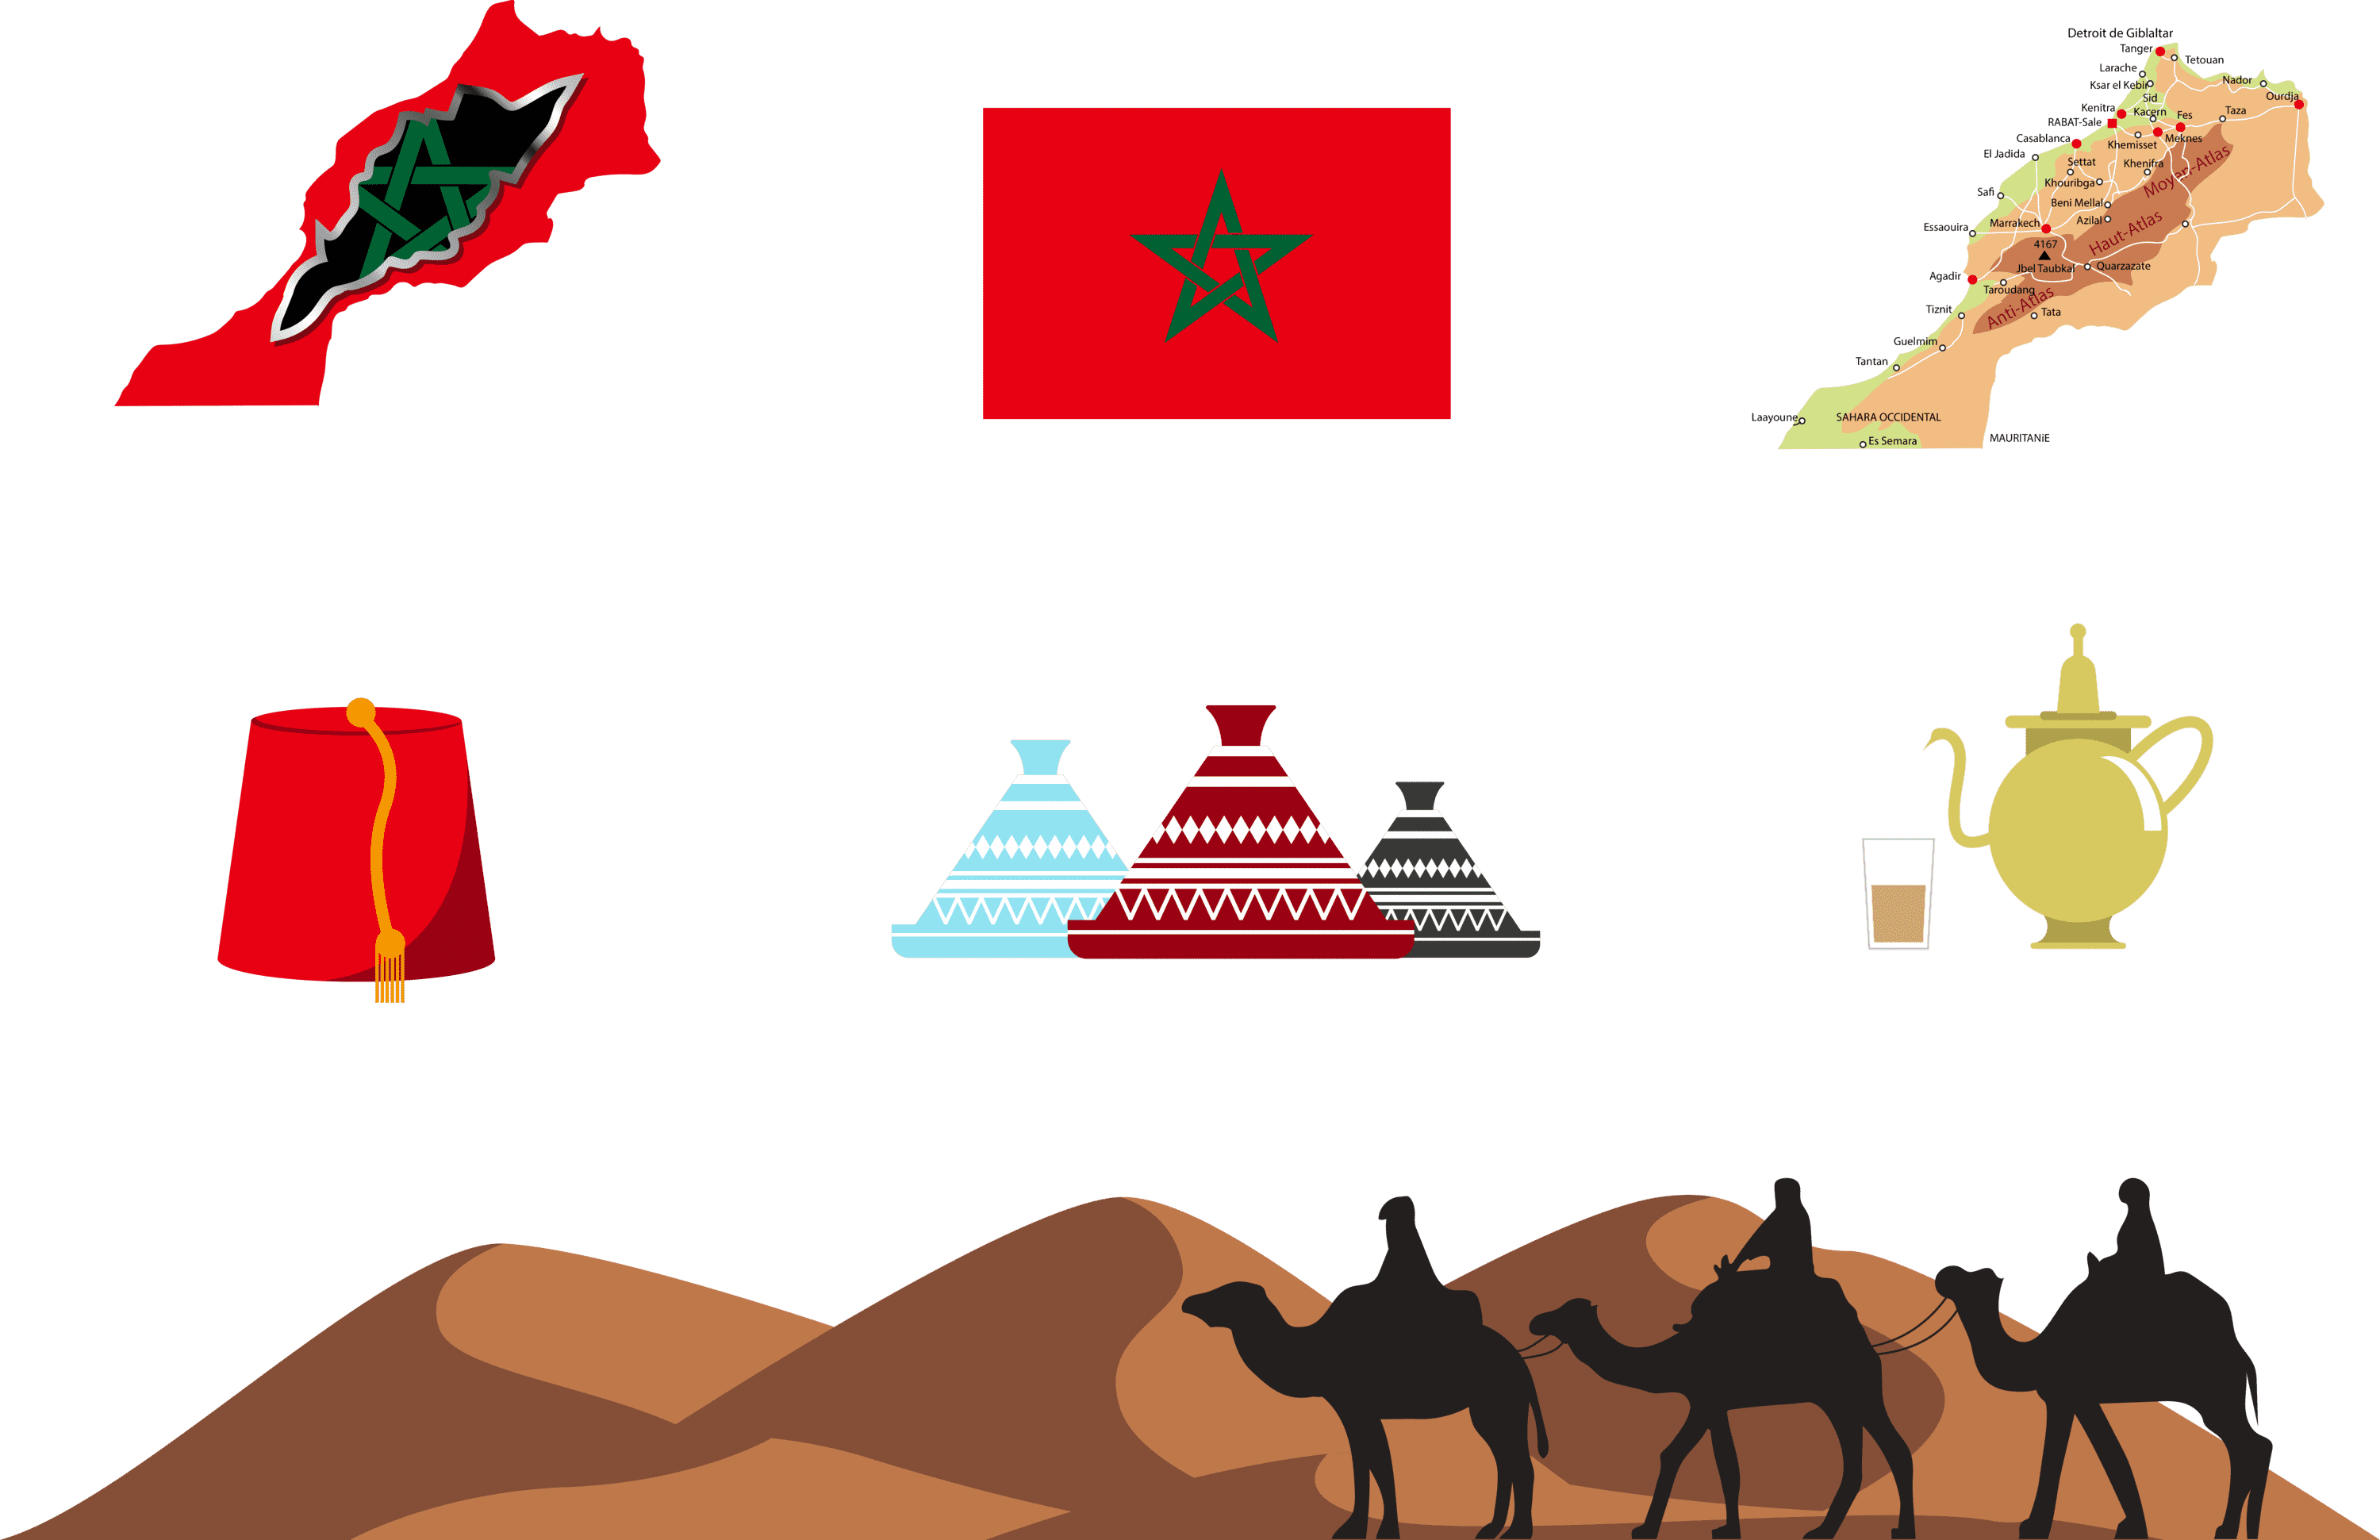 عکس نمادها و نقشه کشور مراکش با کیفیت عالی 